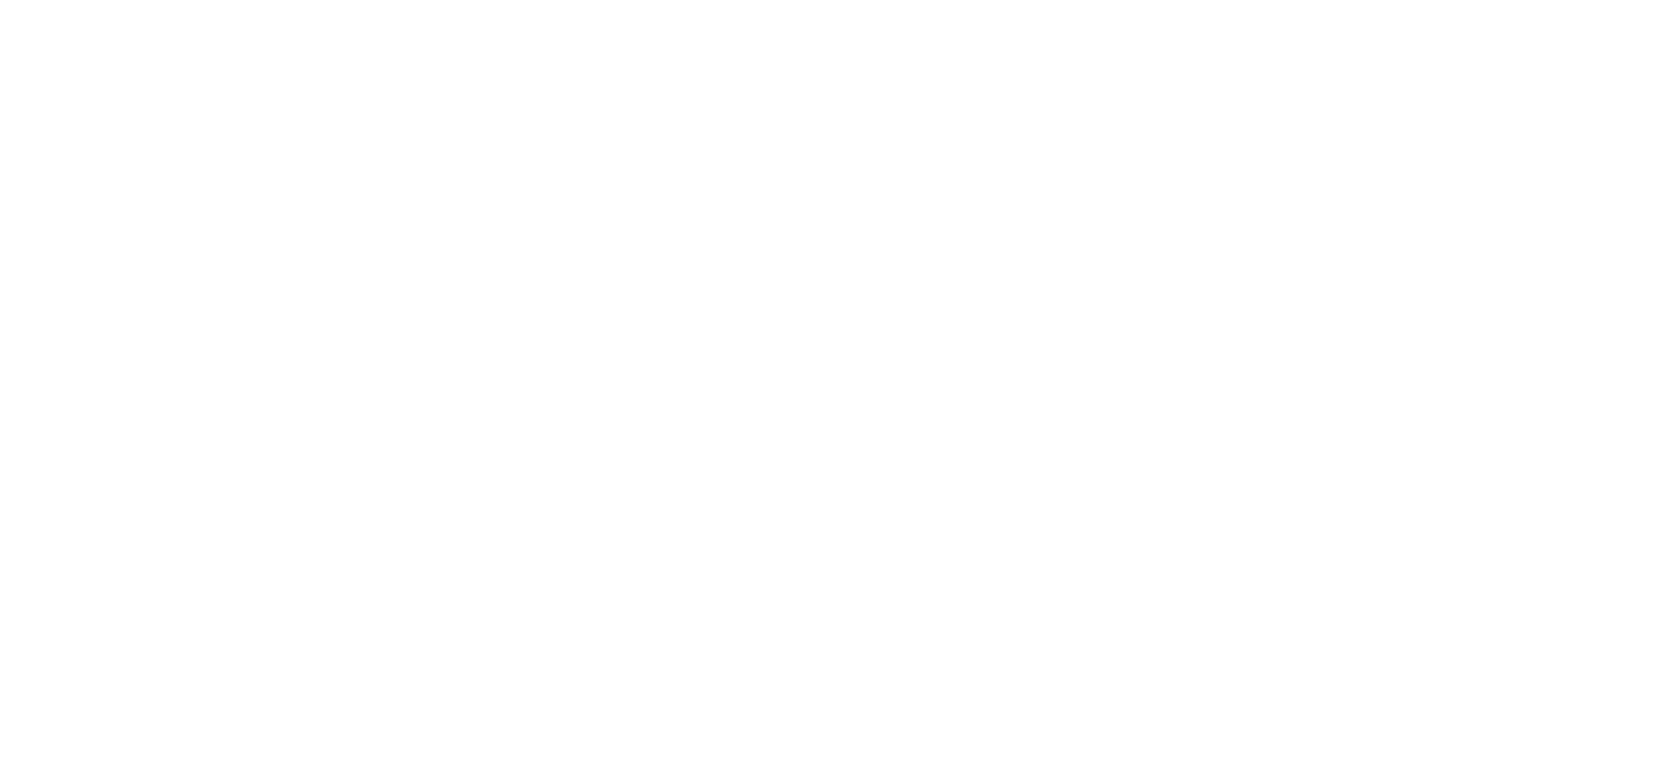 Кейс сервиса BRANDNATION - Дизайн каталога товаров для чая и кофе. Брендинговое агентство BRANDNATION в Москве и Санкт-Петербурге. Услуги: разработка логотипа и фирменного стиля, дизайн упаковки, брендбук, ребрендинг, разработка сайта.